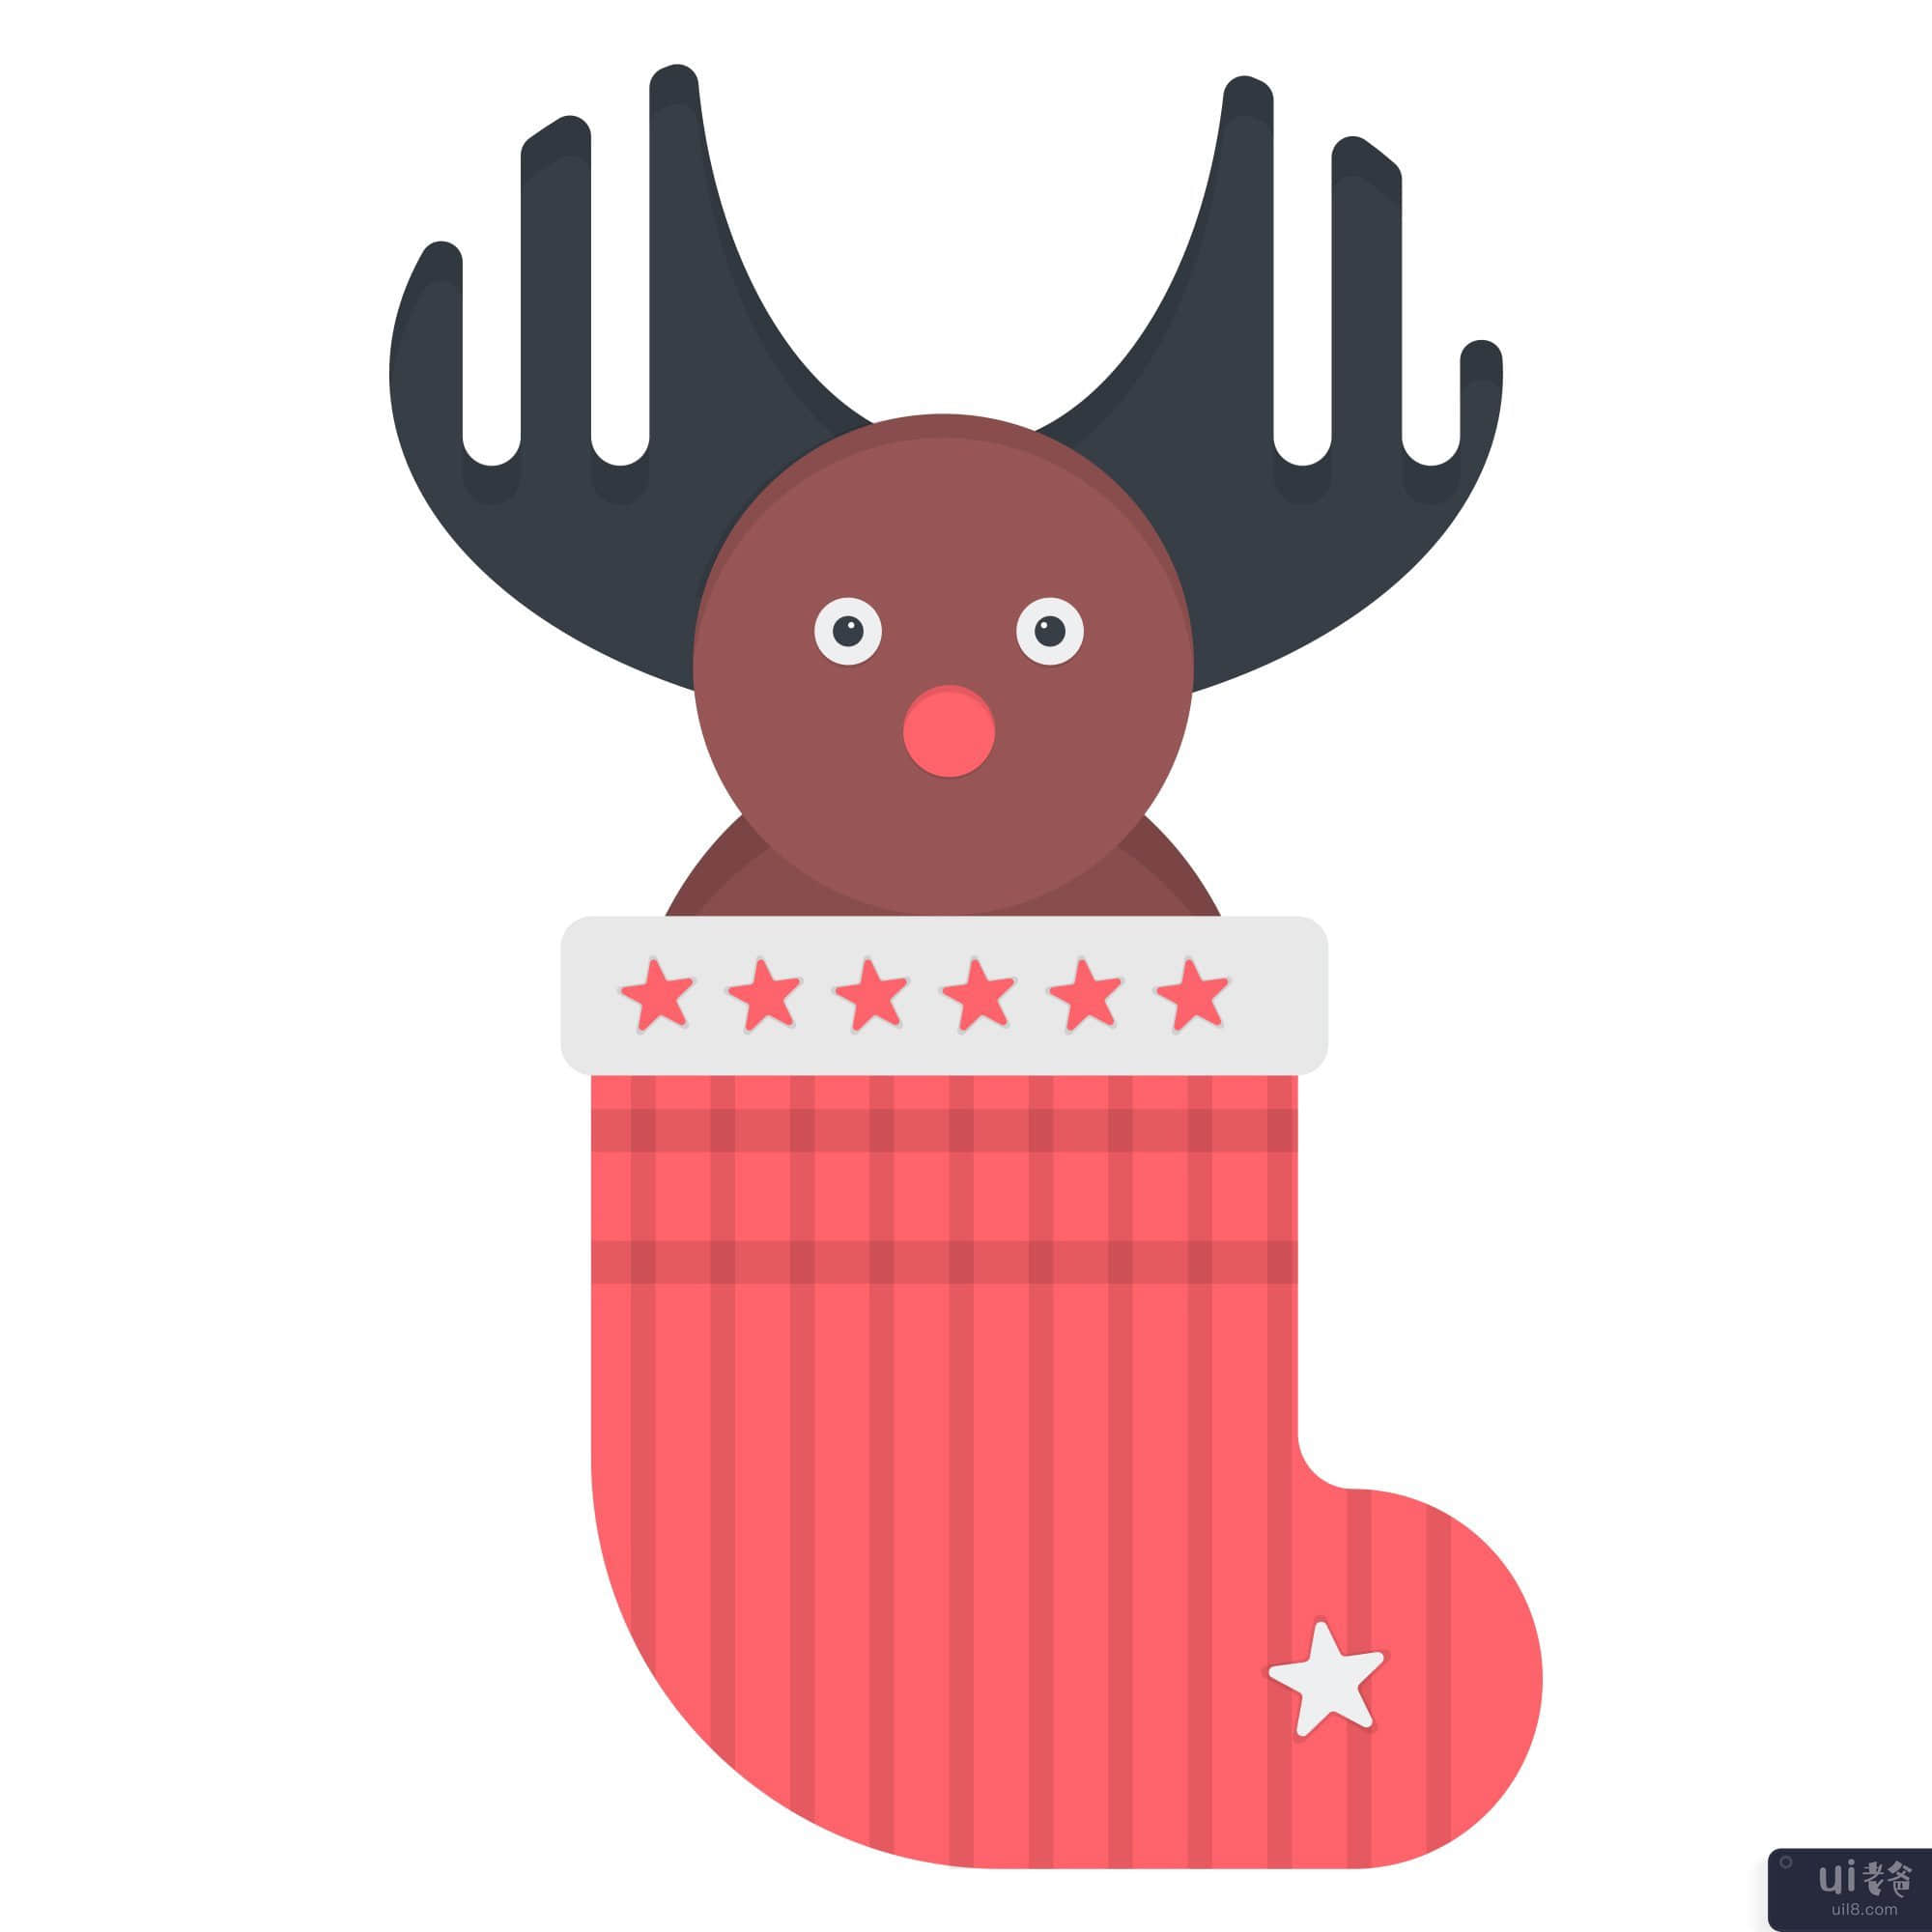 圣诞袜图(Christmas stocking illustration)插图2